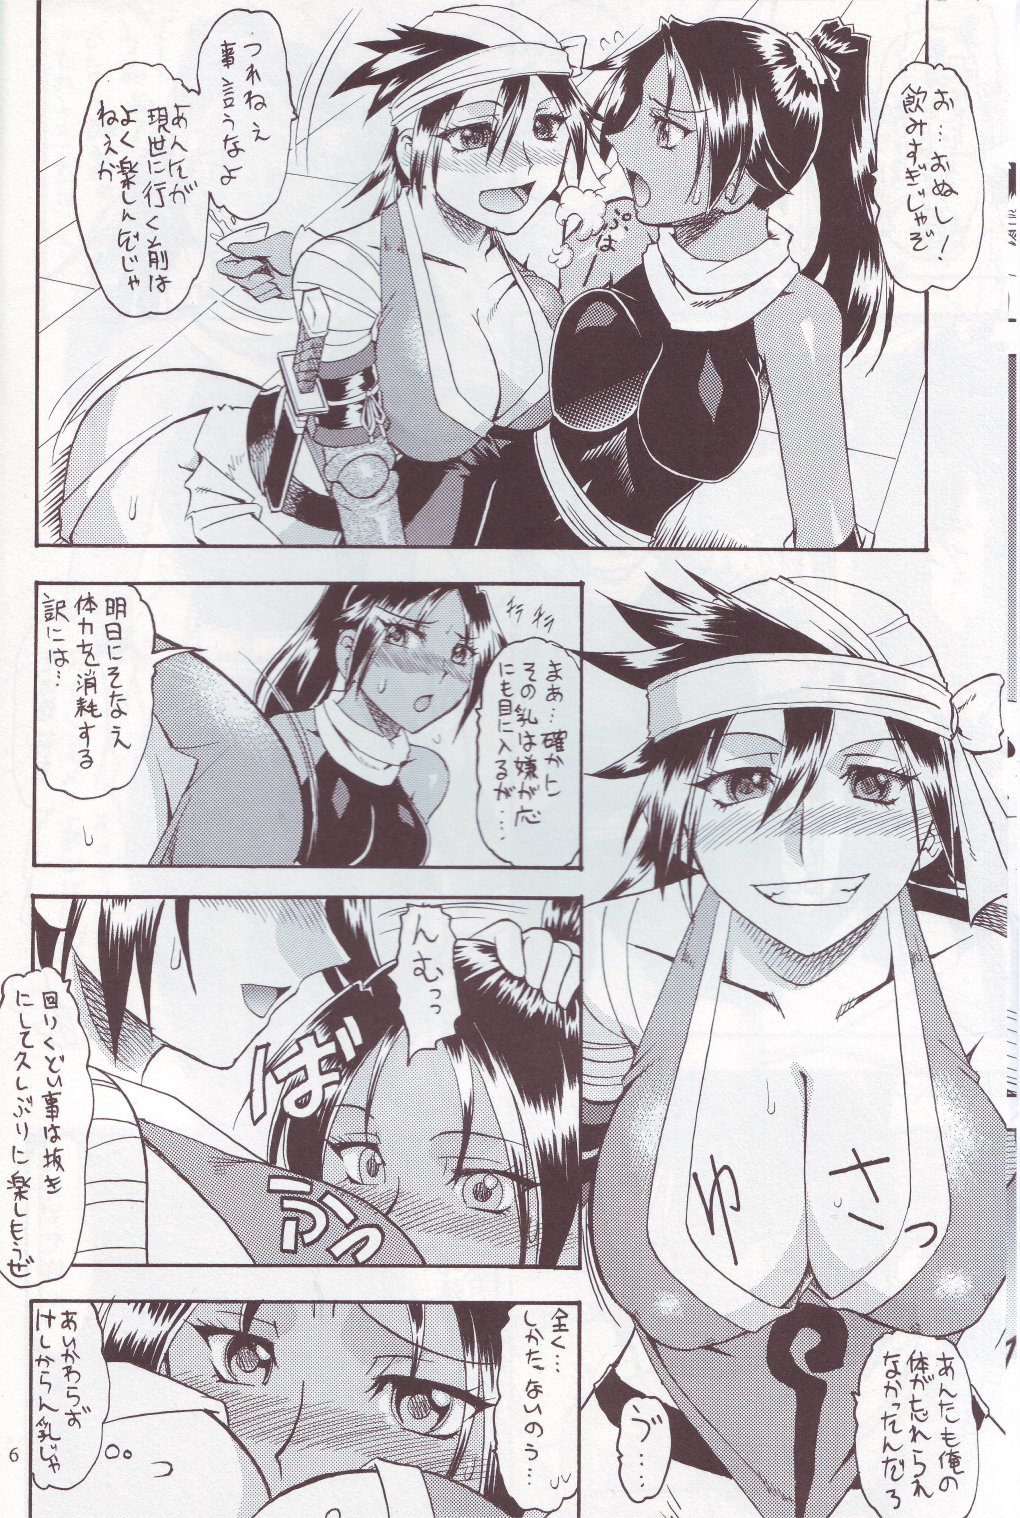 [SEMEDAIN G (Mizutani Mint, Mokkouyou Bond)] SEMEDAIN G WORKS vol.24 - Shuukan Shounen Jump Hon 4 (Bleach, One Piece) page 5 full